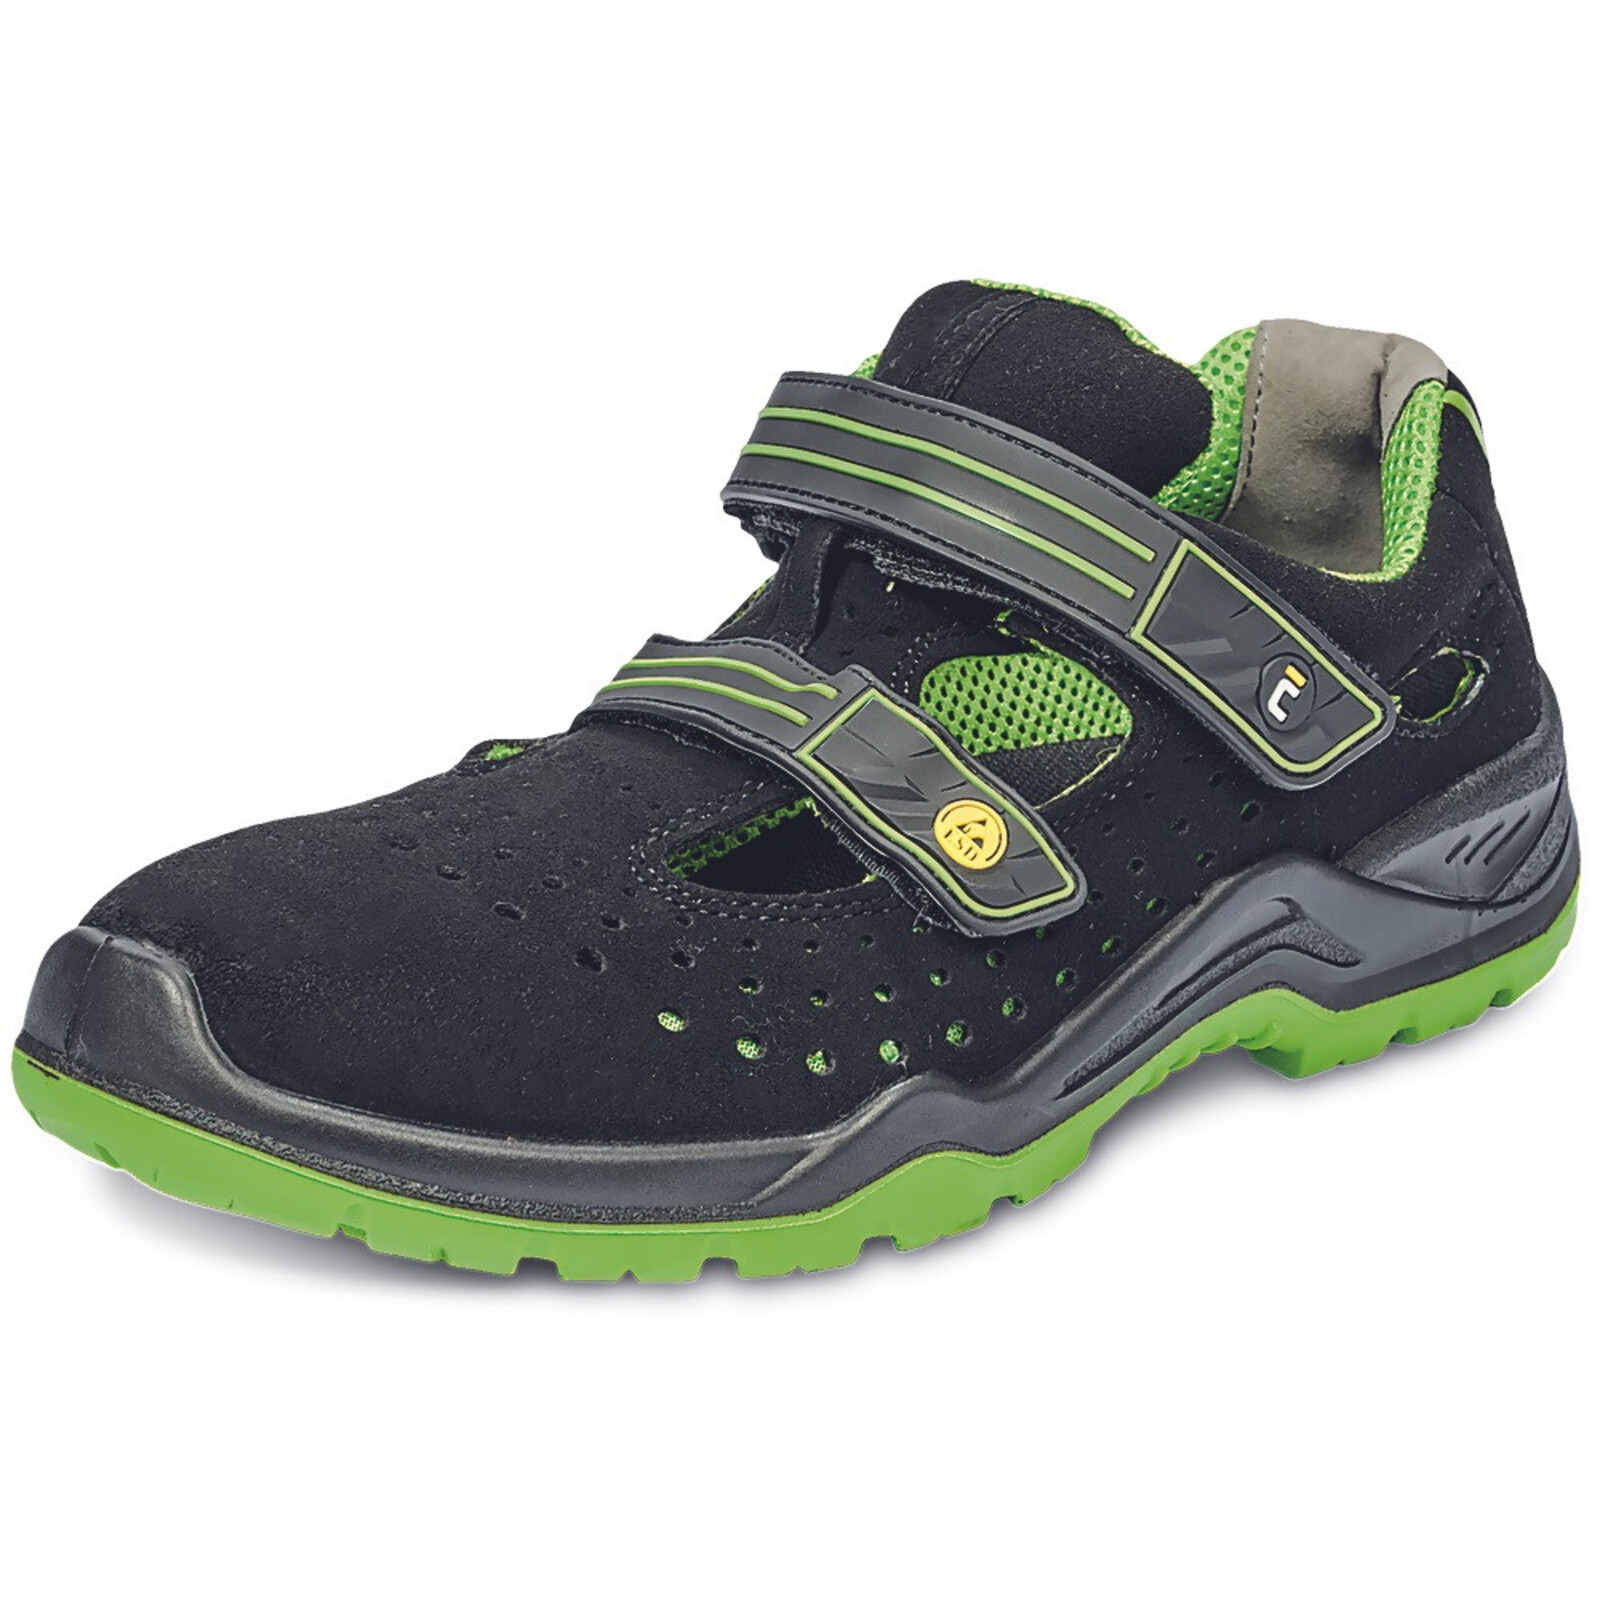 Bezpečnostné sandále Cerva Halwill MF ESD S1P SRC - veľkosť: 38, farba: čierna/zelená